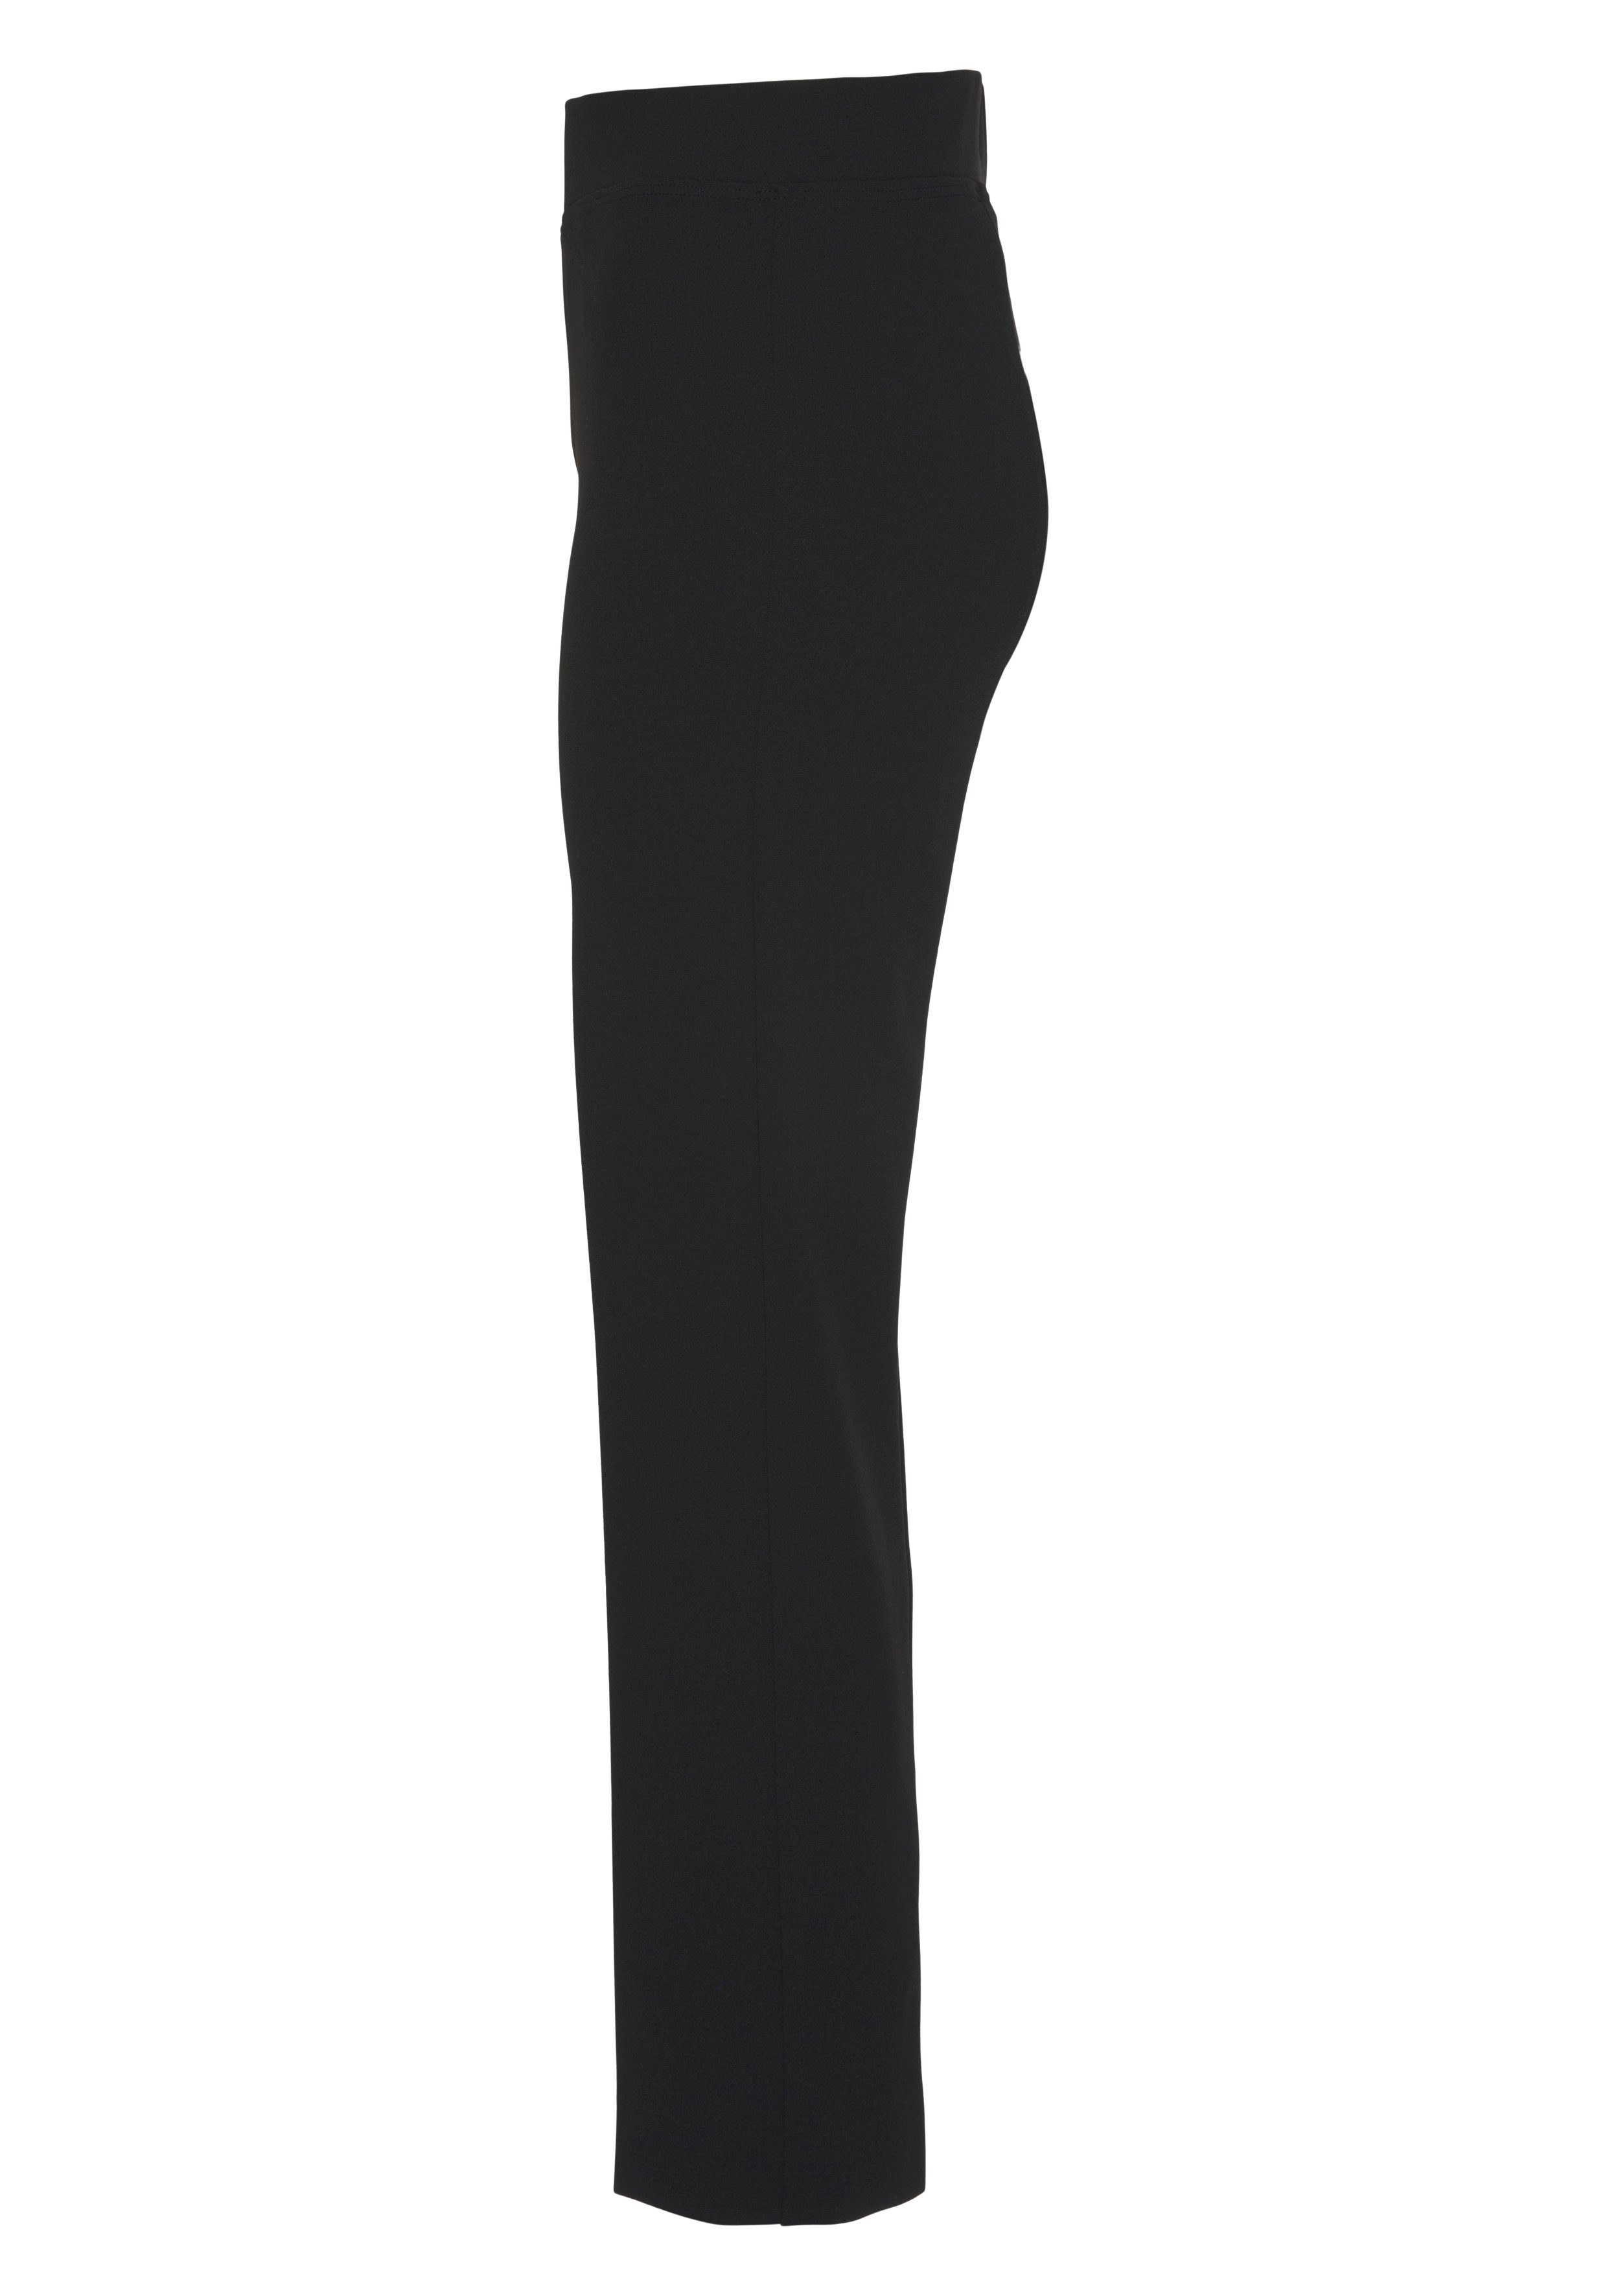 HERMANN LANGE Collection Stretch-Hose in mit schwarz Bügelfalte Schlupfform eleganter